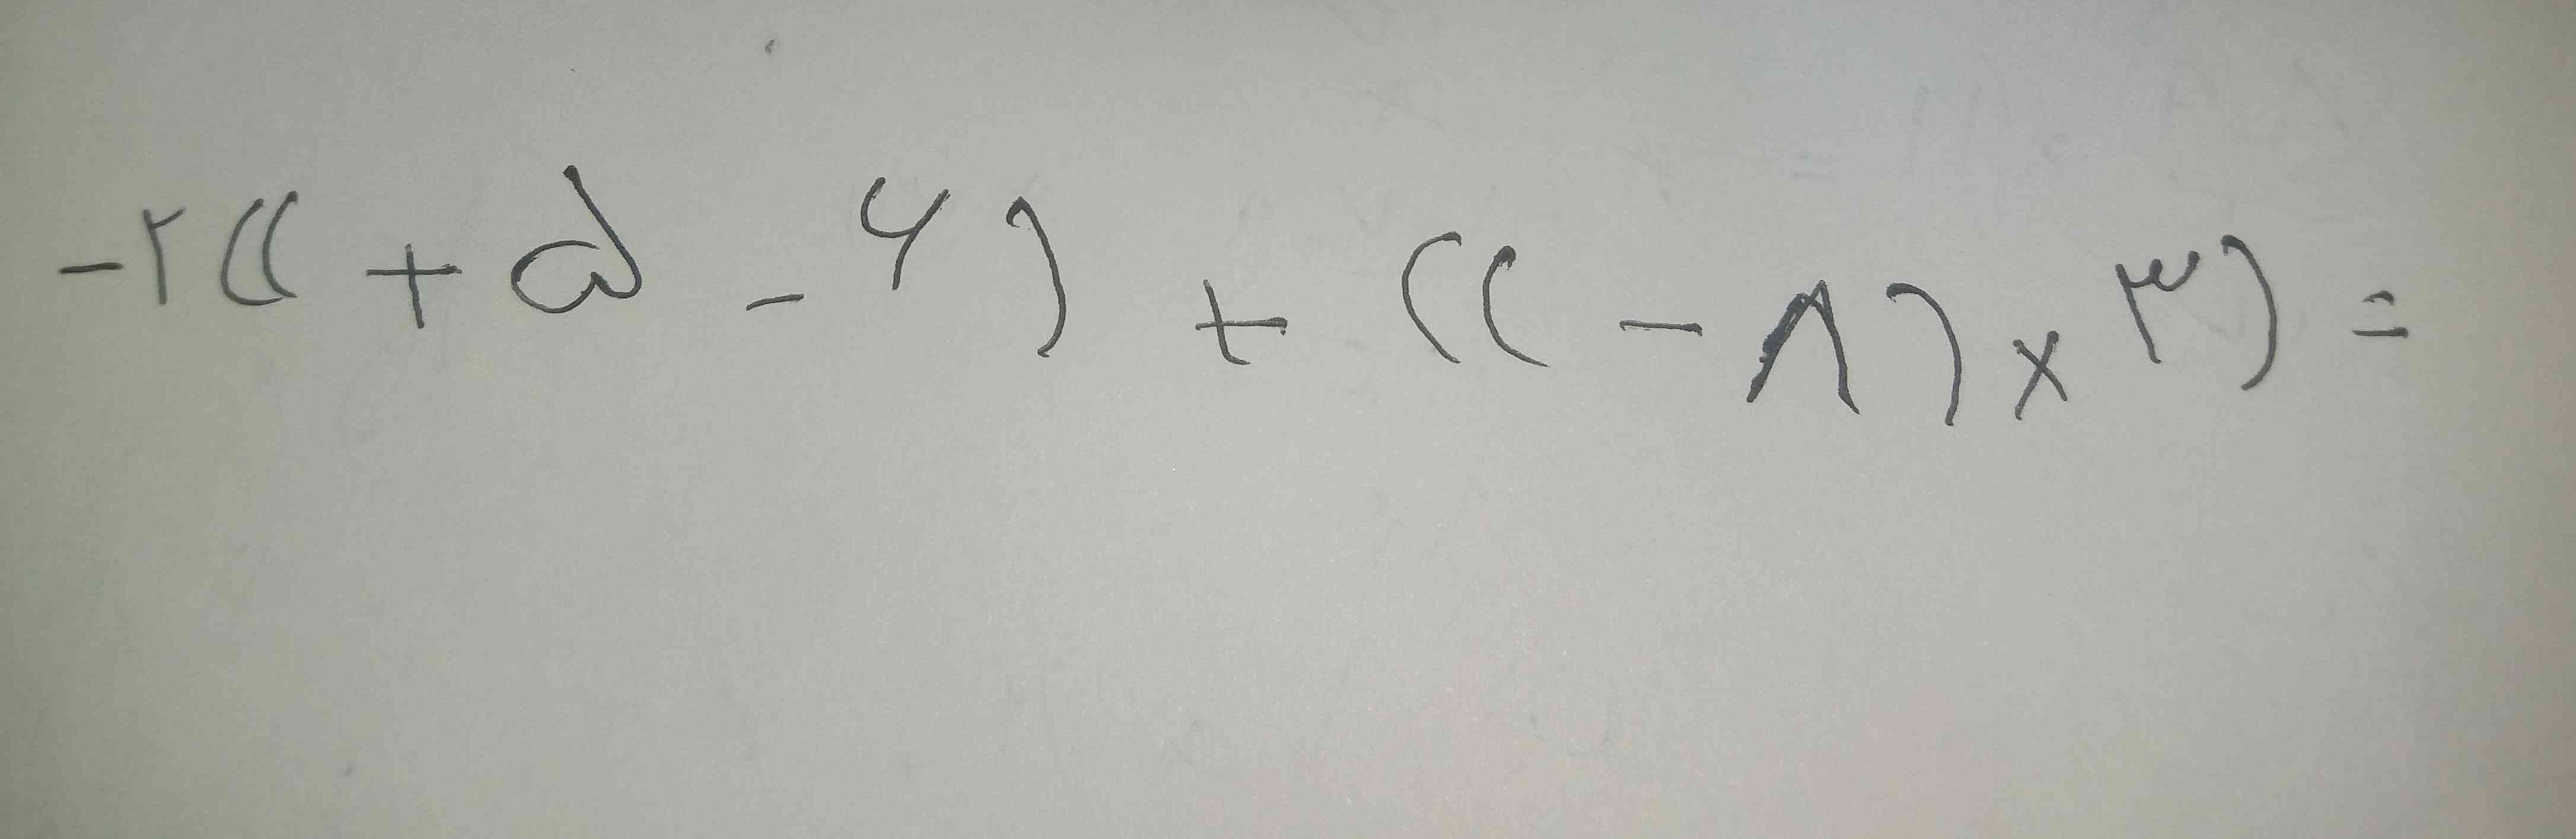 
سلام میشه عبارت زیر رو حل کنید:
-۲((+۵-۶)+((-۸)×۳)=